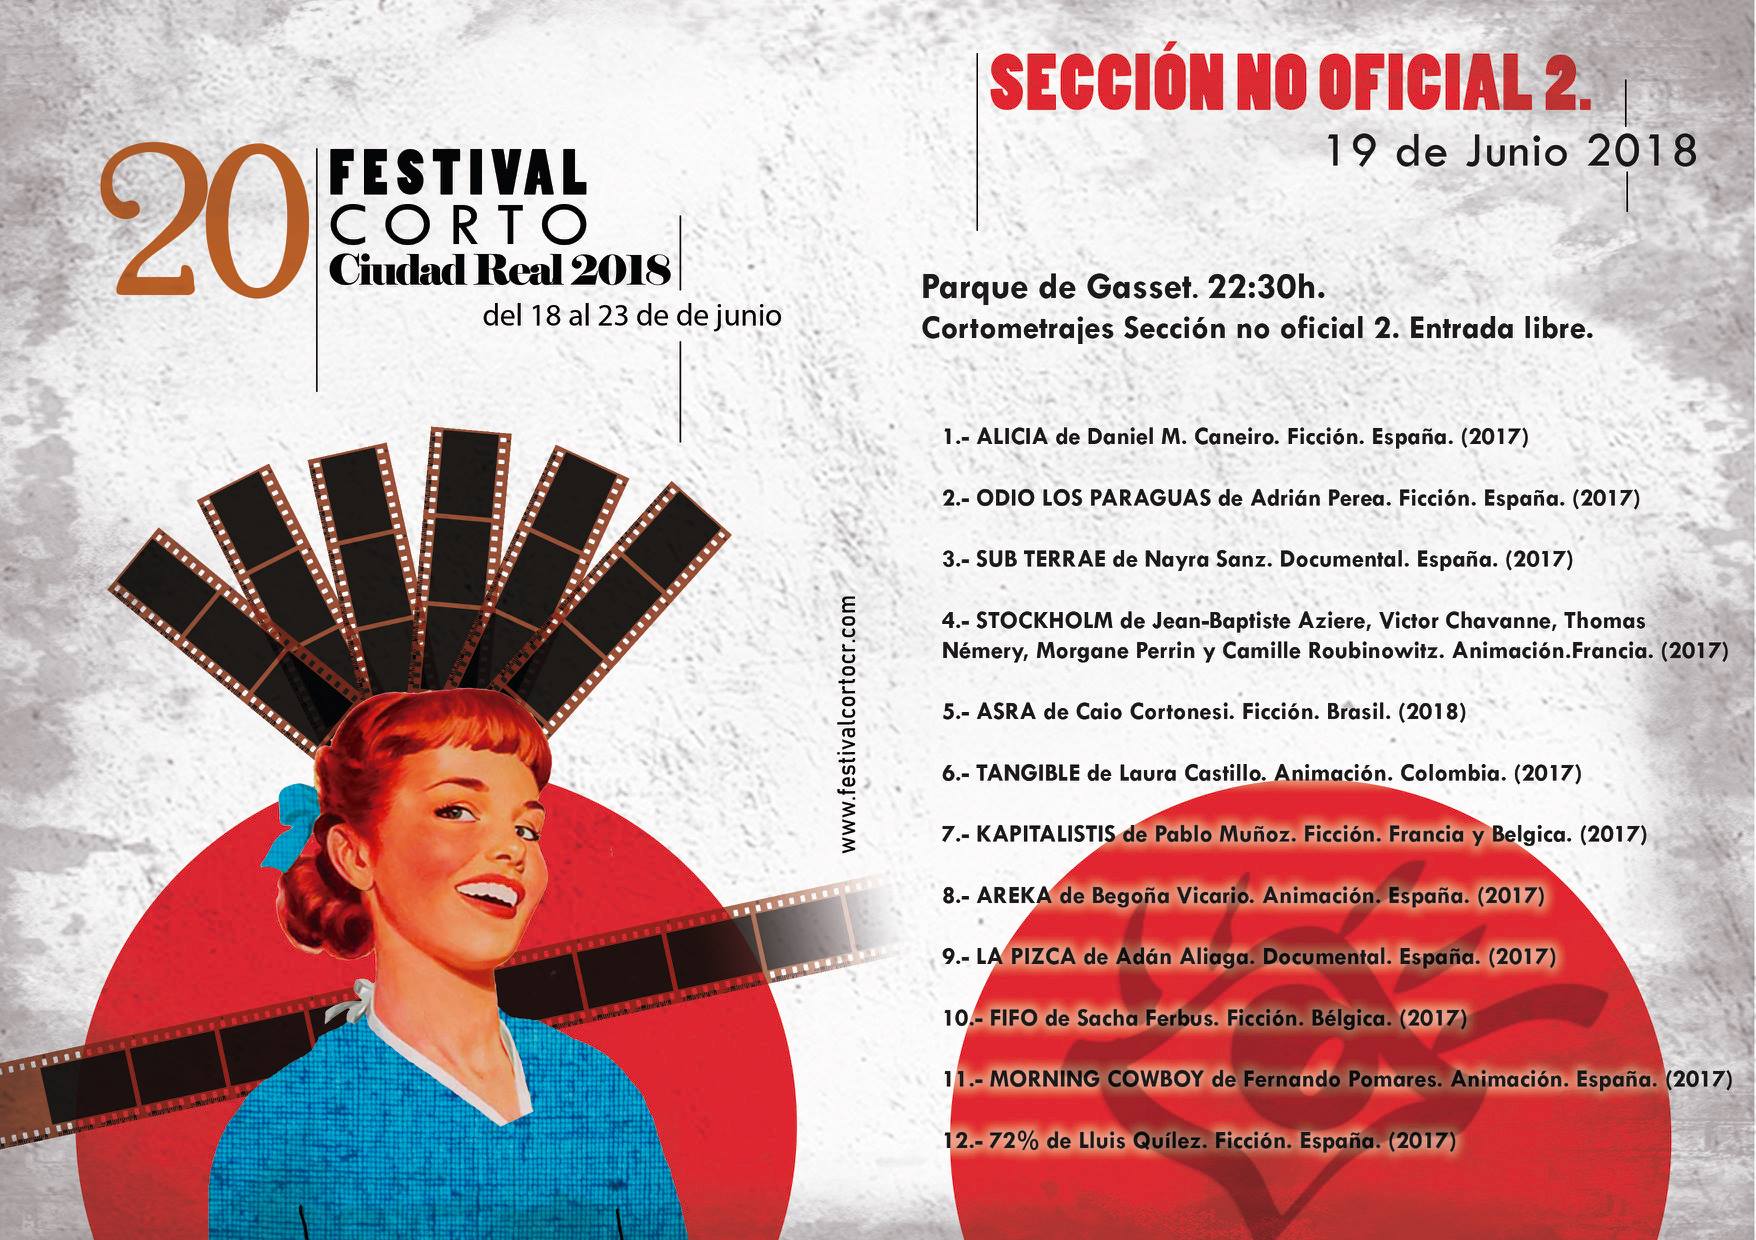 Sección no oficial 2018 - Festival Corto Ciudad Real